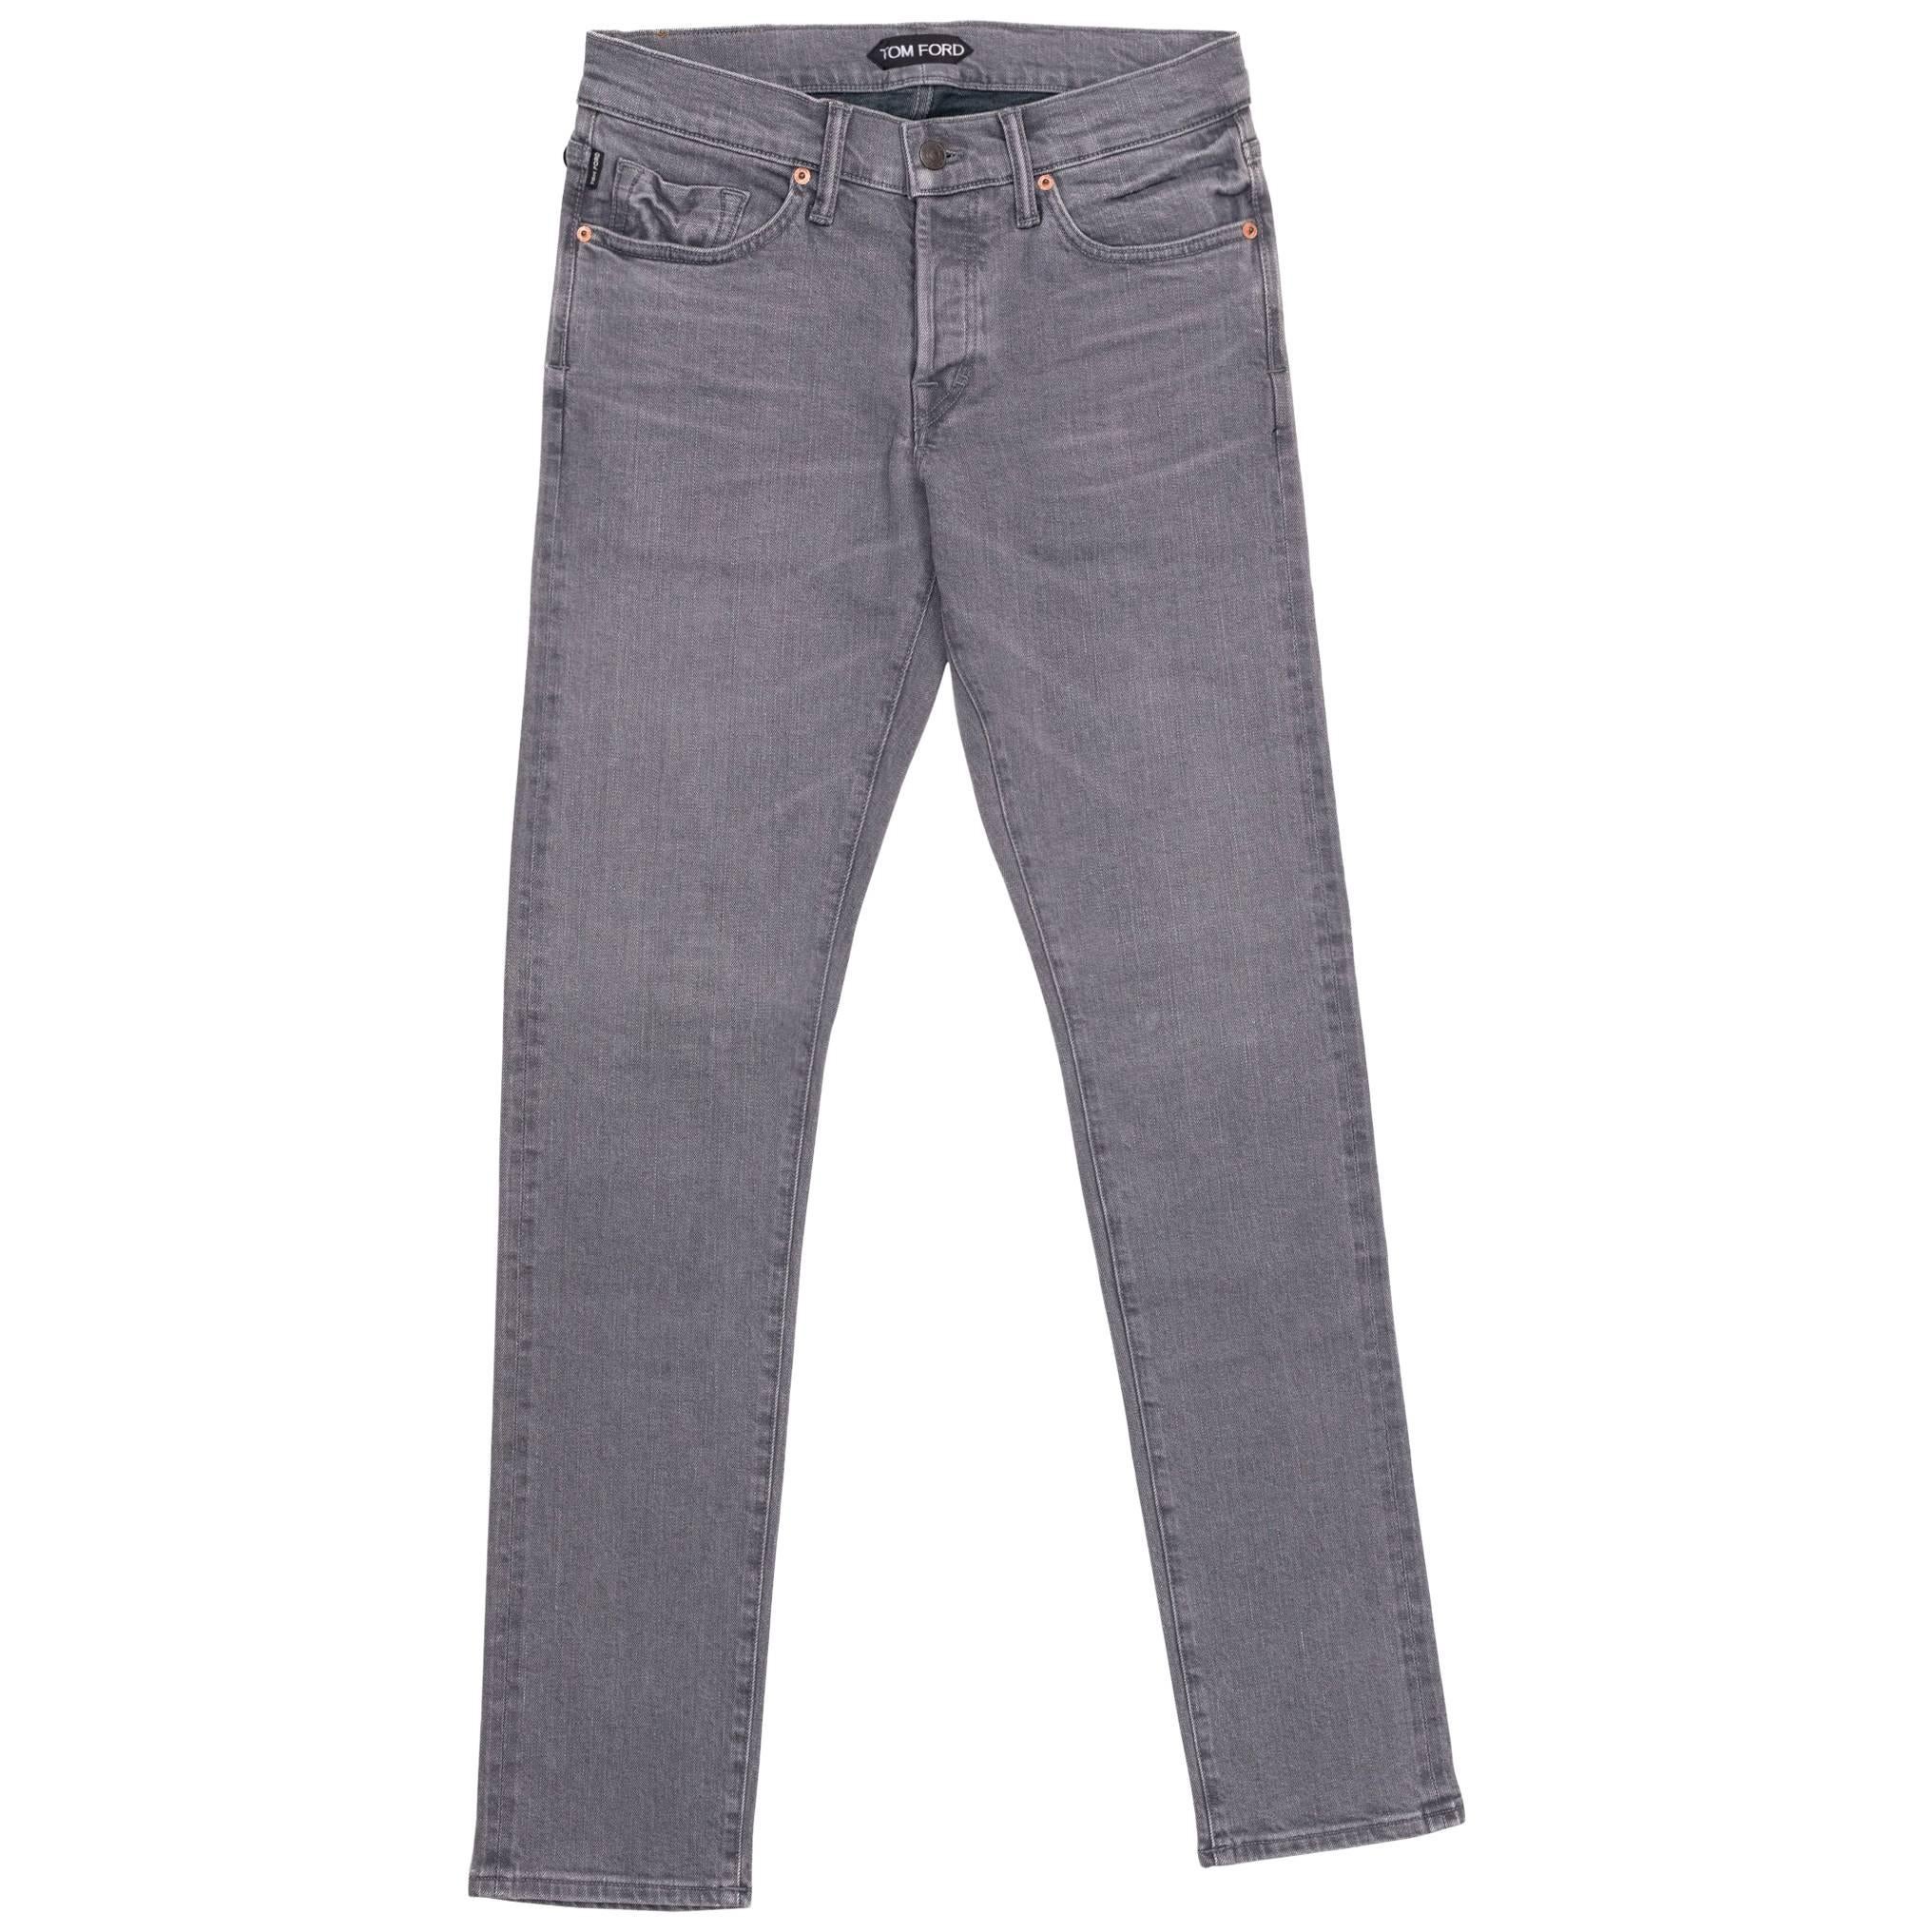 Tom Ford Selvedge Denim Jeans Light Grey Wash Size 32 Regular Fit Model   For Sale